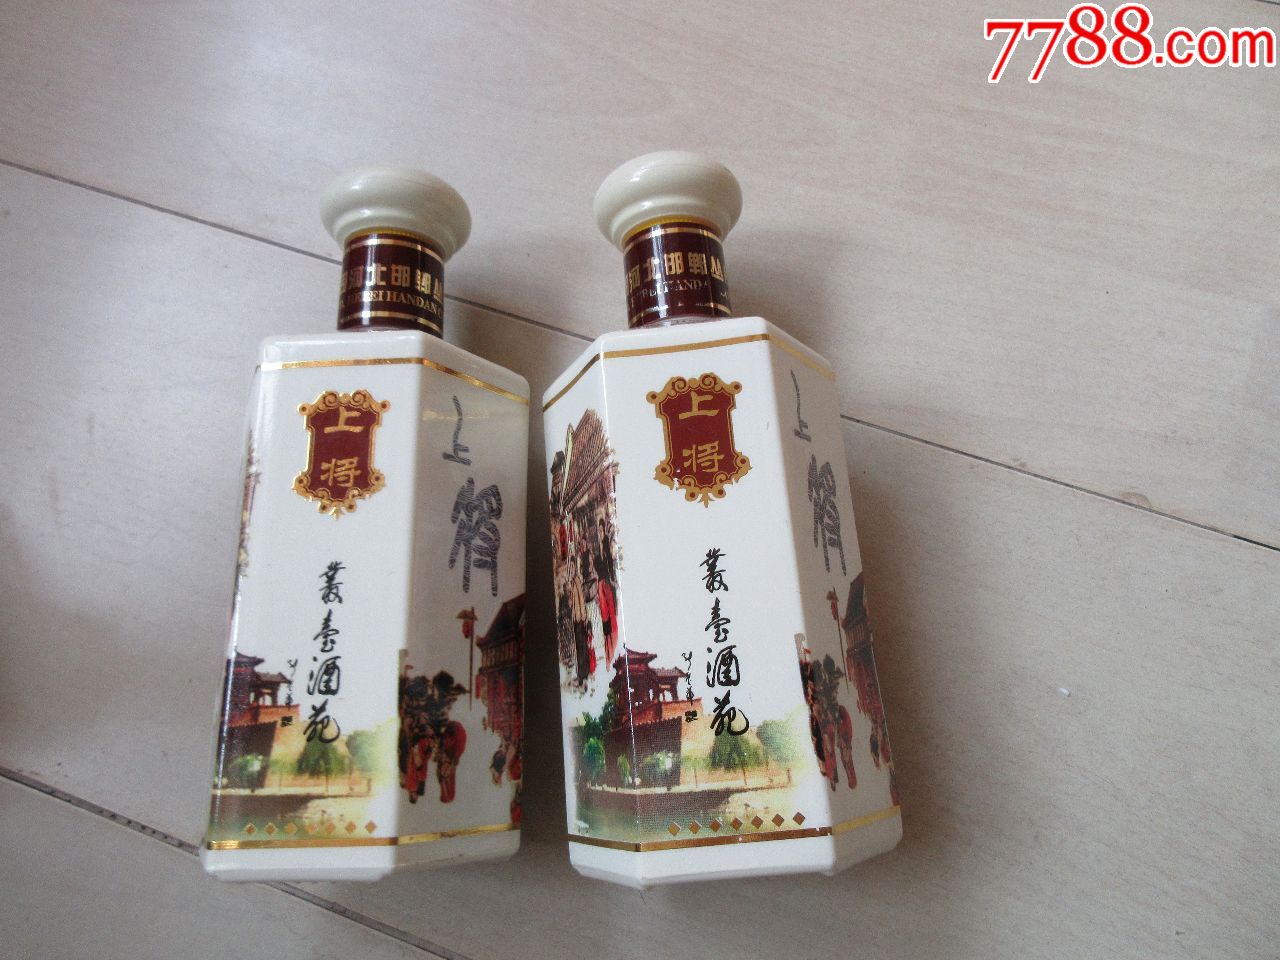 "丛台酒—上将"酒瓶2个现低拍-价格:5.0000元-au-酒瓶